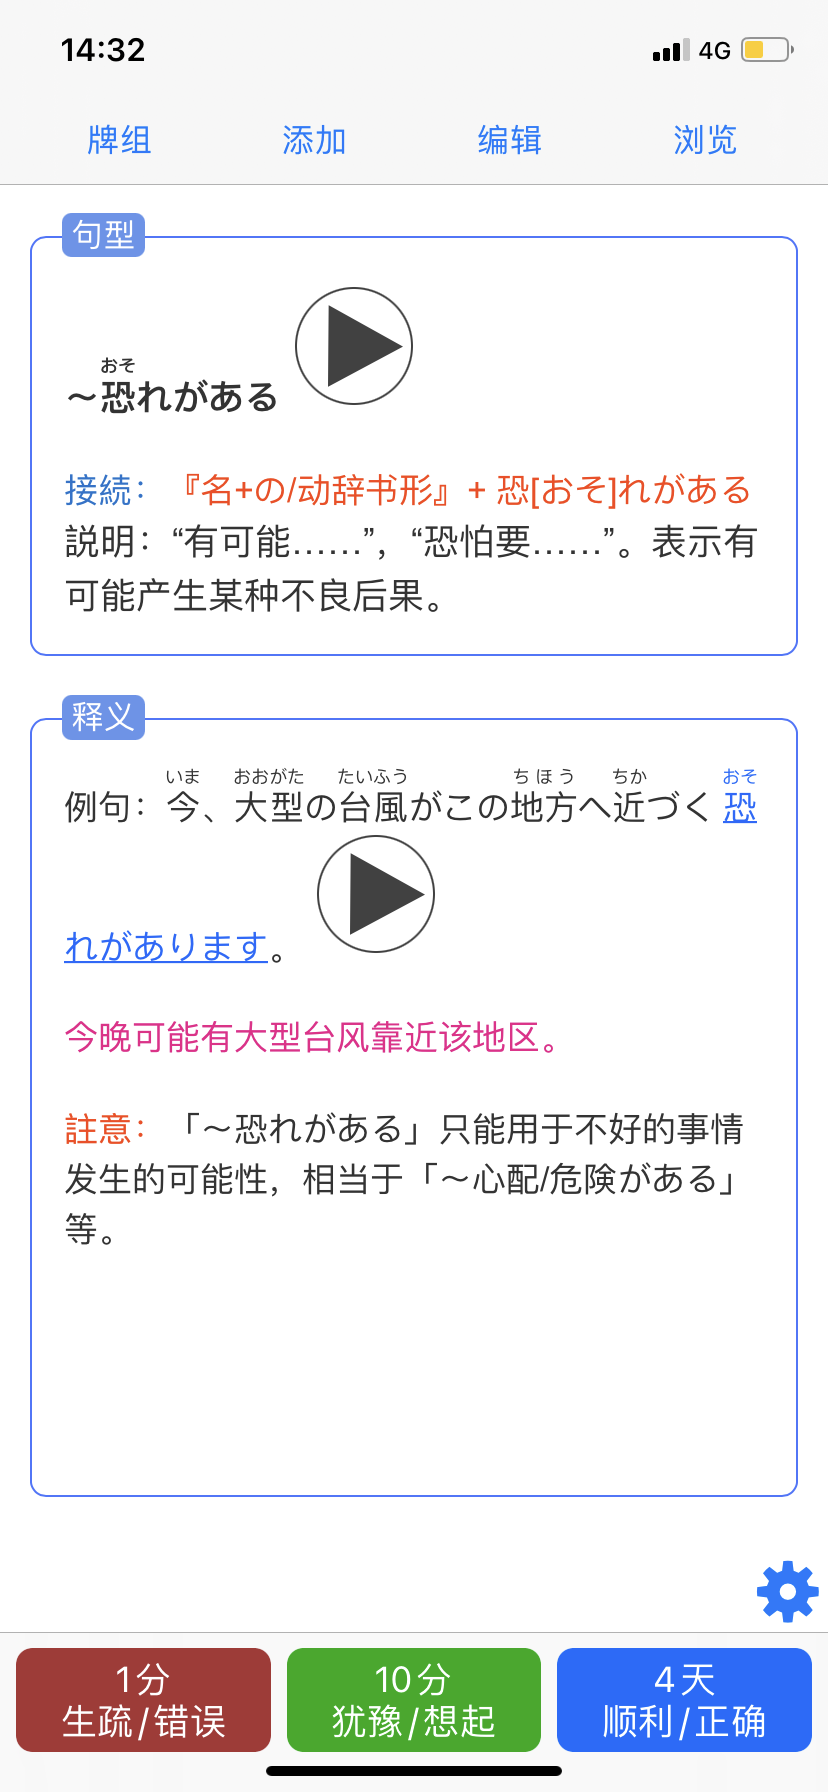 日语蓝宝书语法 文法n2 带音频 例句 注释详细anki资源中文网